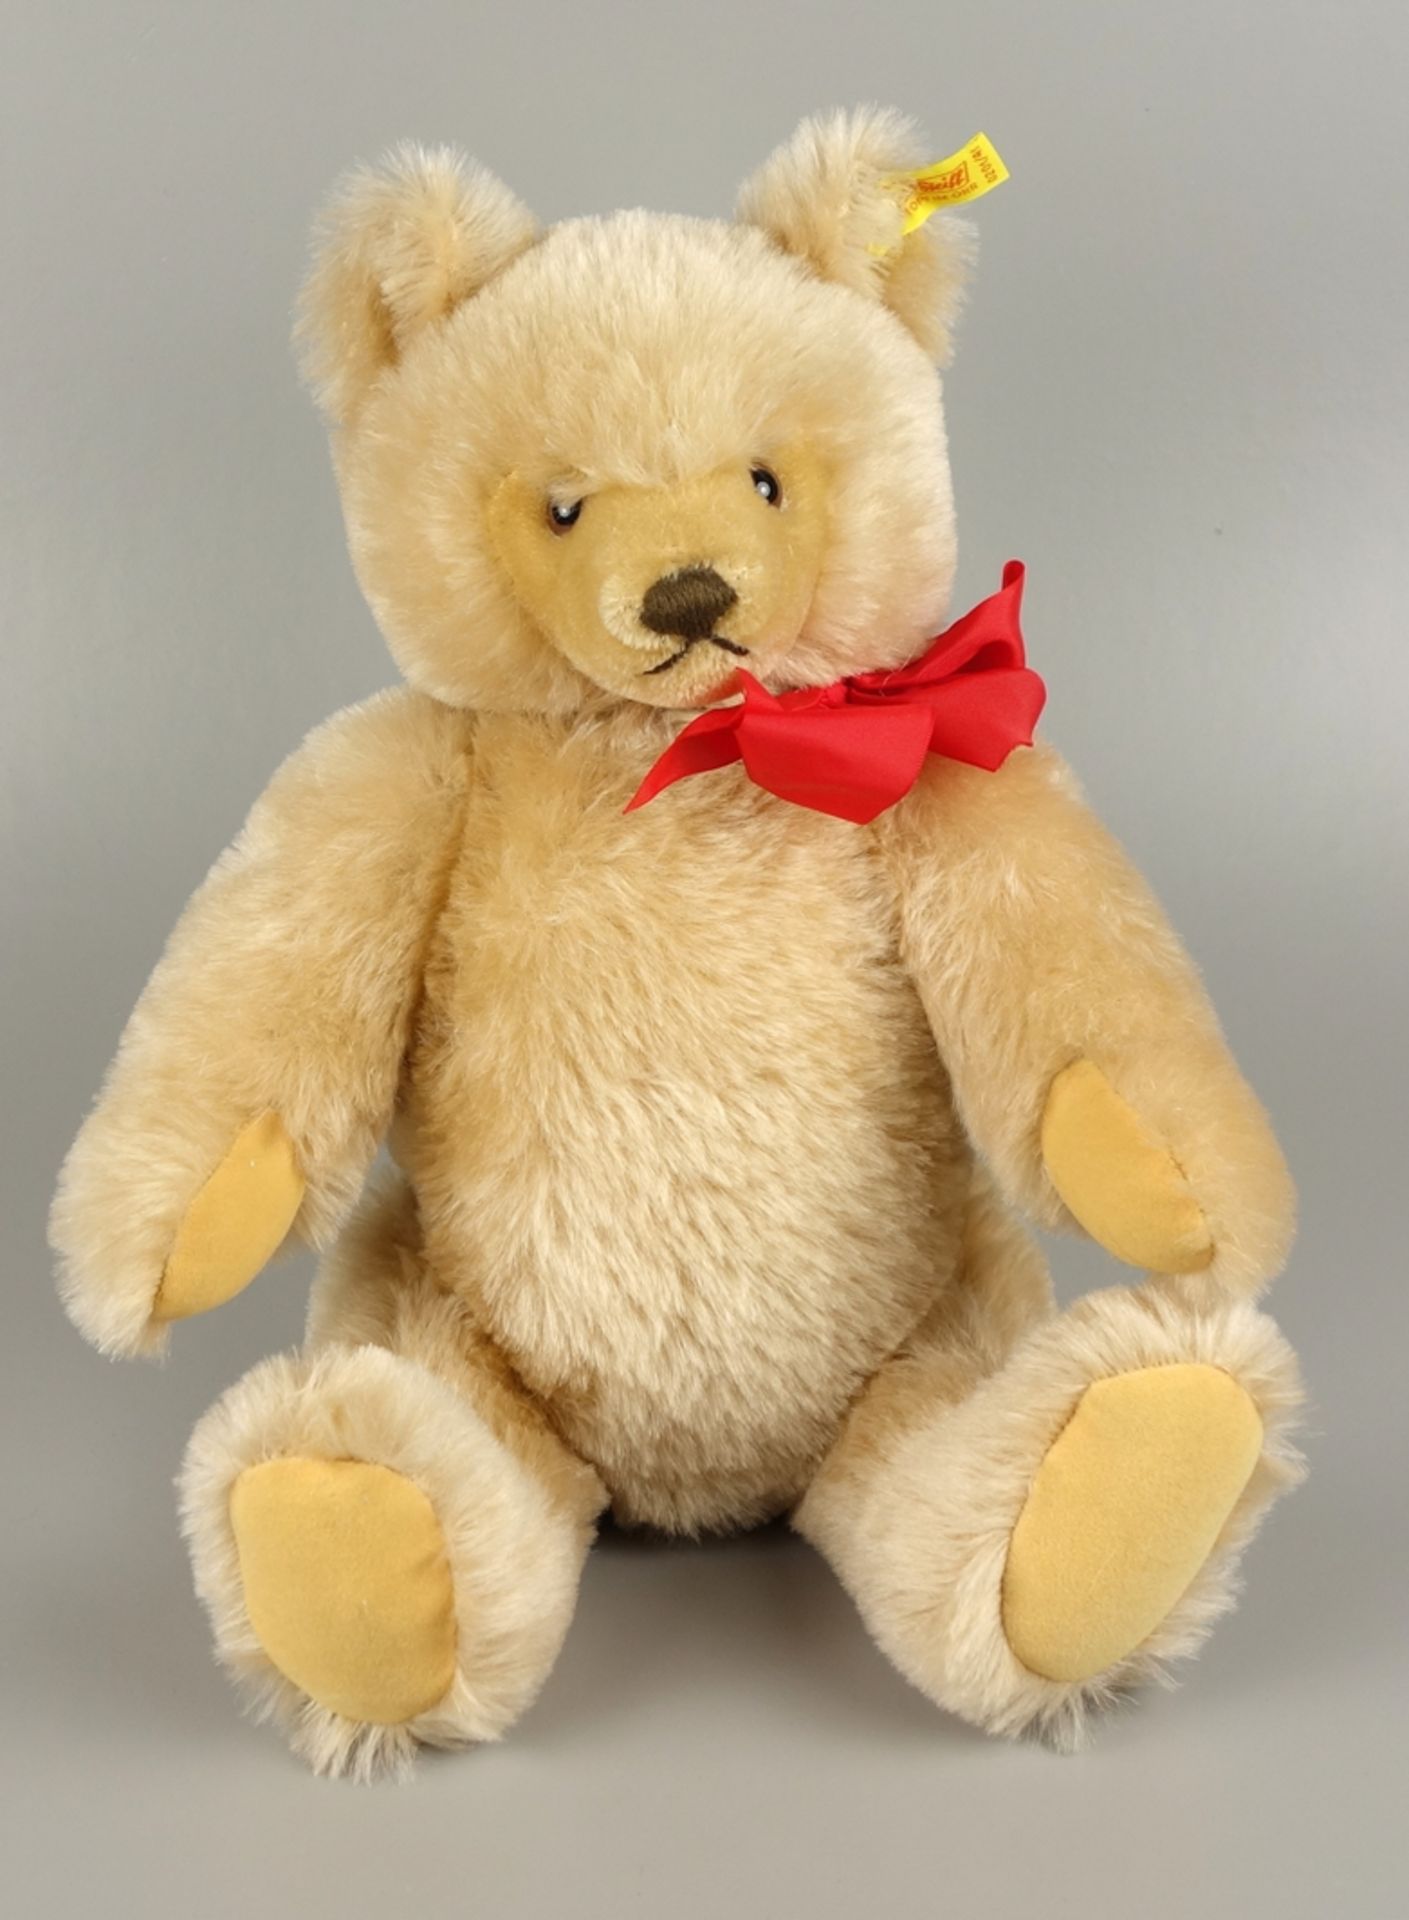 Teddybär, Steiff, Nr. 0201/41, 1980er Jahre, bewegliche Gliedmaße, mit roter Sc